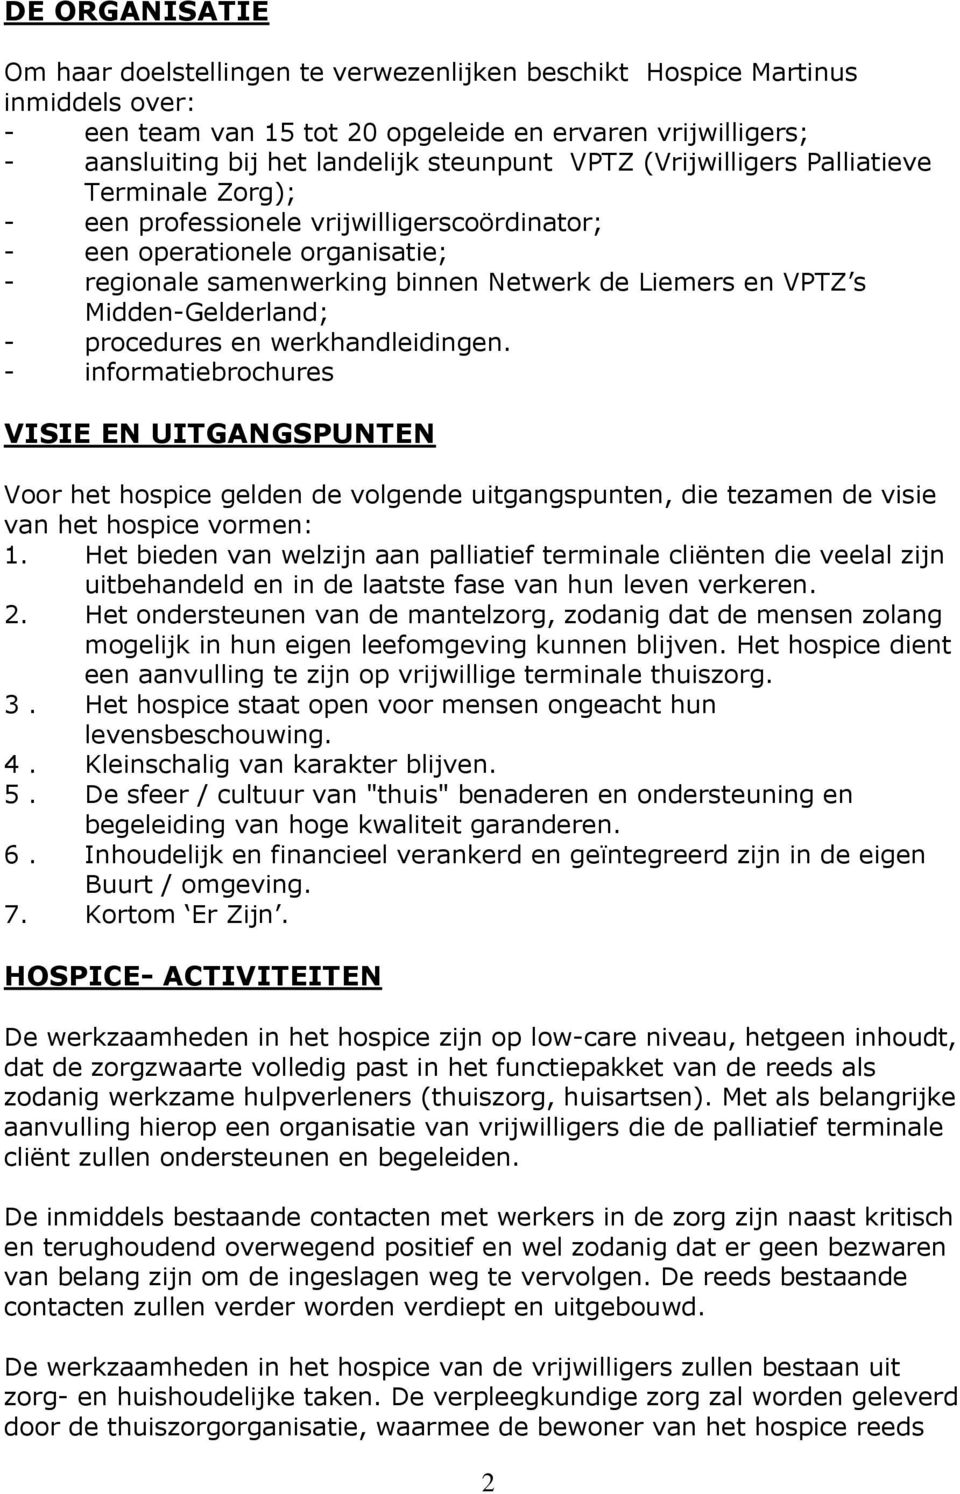 Midden-Gelderland; - procedures en werkhandleidingen. - informatiebrochures VISIE EN UITGANGSPUNTEN Voor het hospice gelden de volgende uitgangspunten, die tezamen de visie van het hospice vormen: 1.